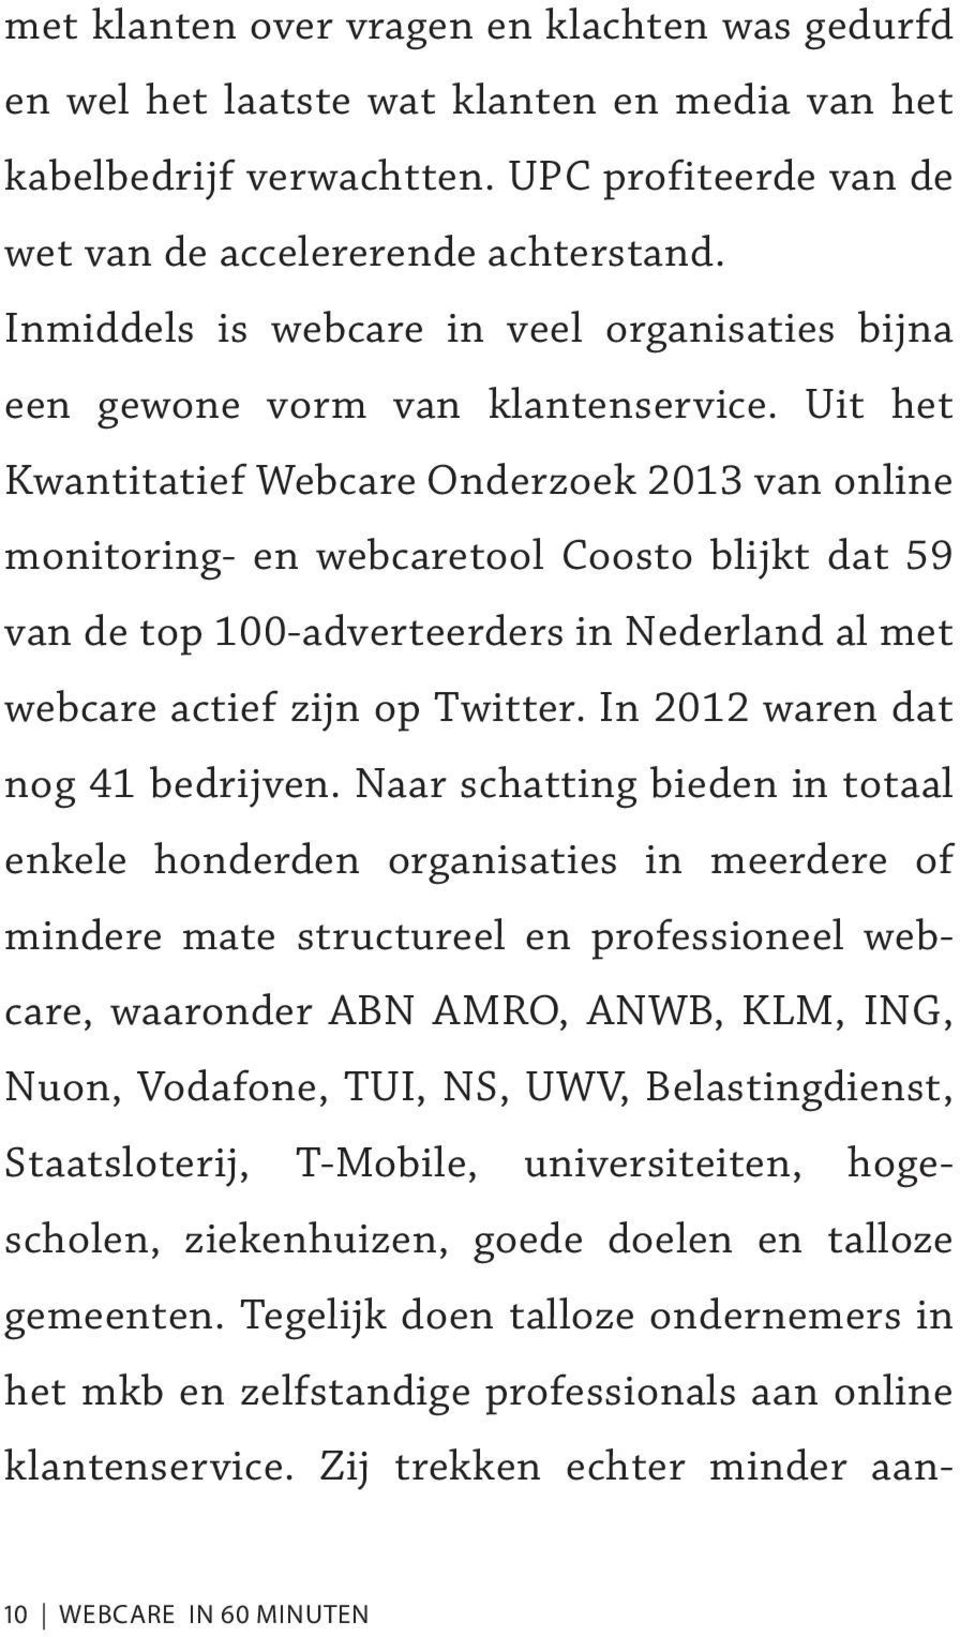 Uit het Kwantitatief Webcare Onderzoek 2013 van online monitoring- en webcaretool Coosto blijkt dat 59 van de top 100-adverteerders in Nederland al met webcare actief zijn op Twitter.